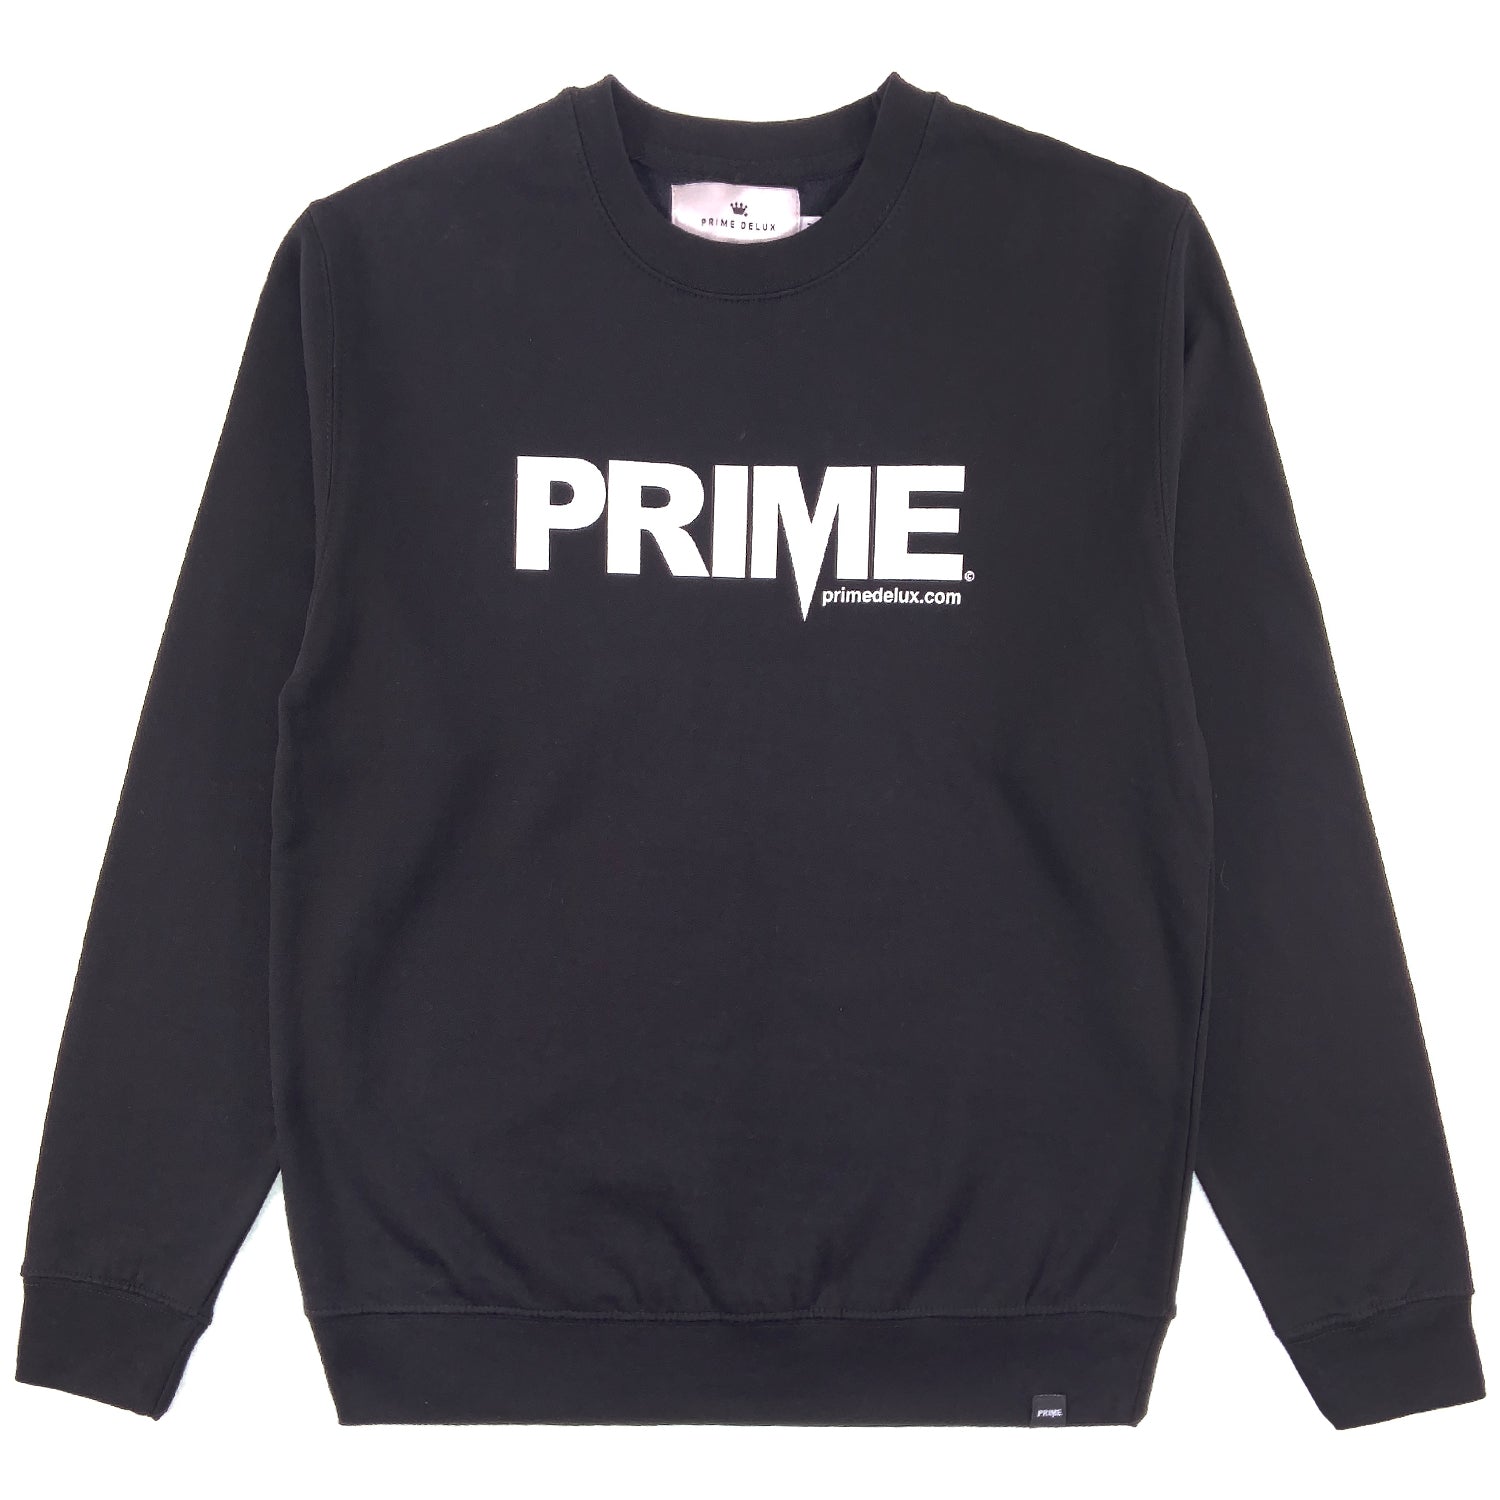 PRIME DELUX OG PREMIUM CREW SWEAT - BLACK / WHITE - Prime Delux Store